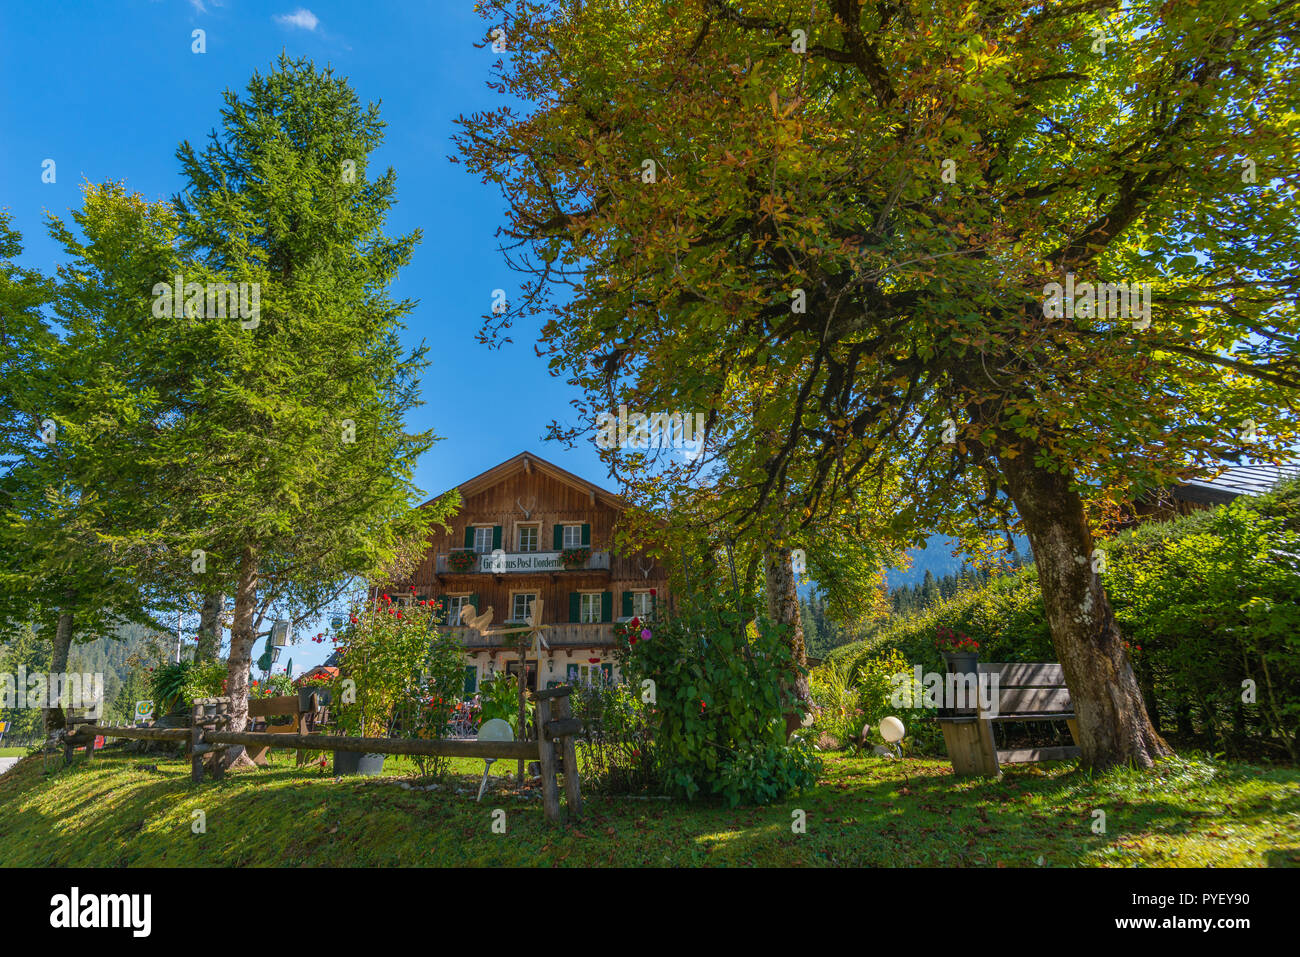 Maisons alpines, Vorderriss, Karwendel, les Alpes, Bavaria, Germany, Europe Banque D'Images